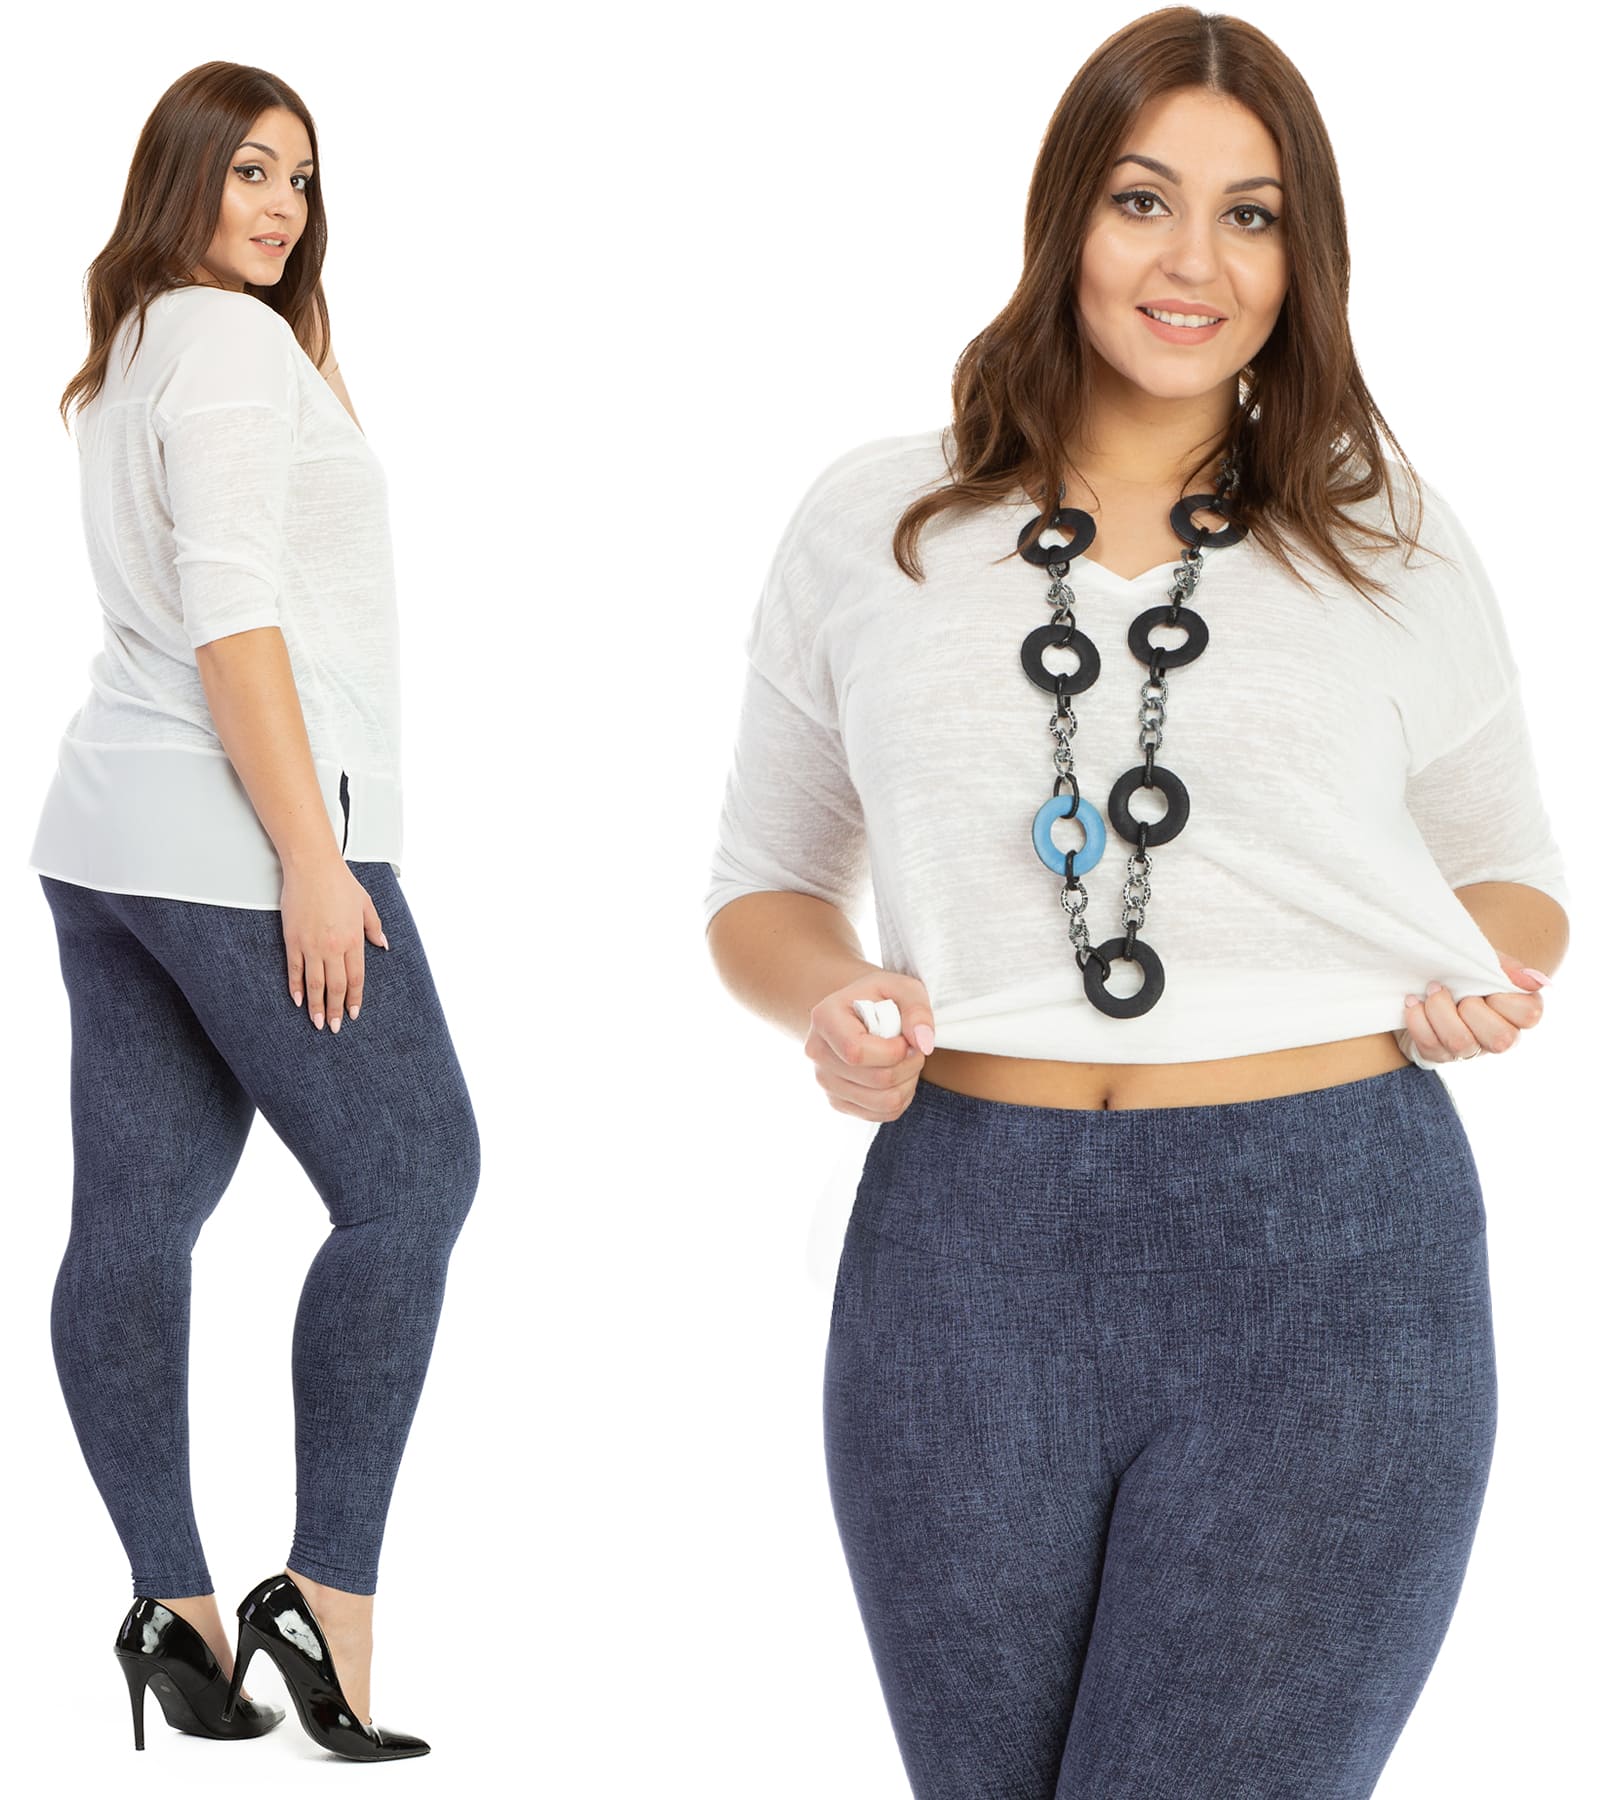 Legginsy damskie plus size nadruk imitujący jeans Model Roksana Bensini